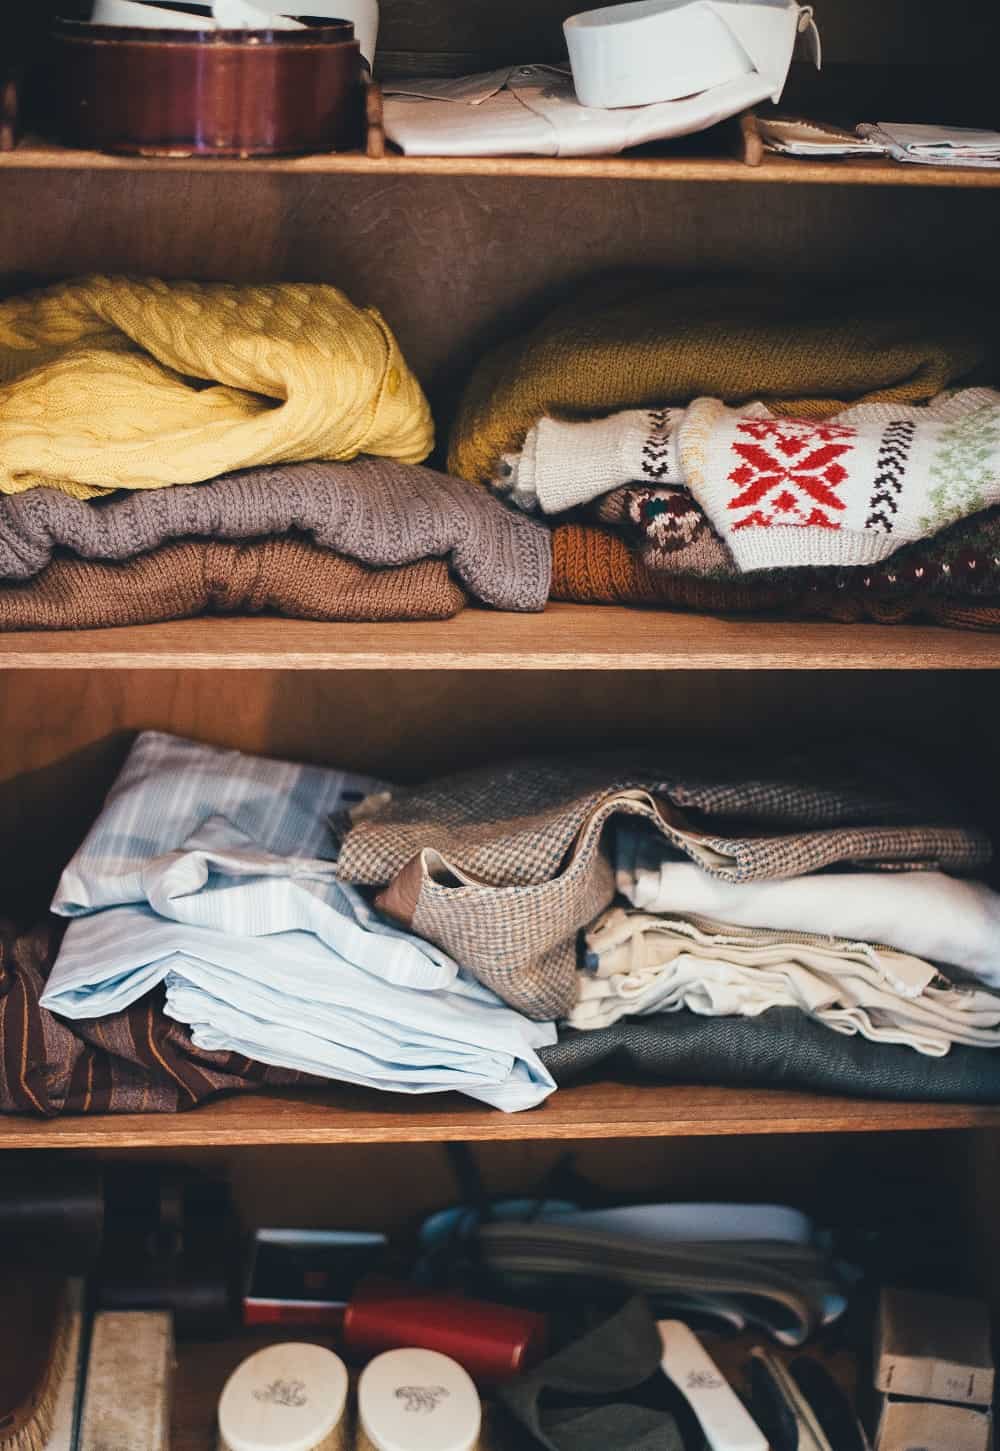 Clothes inside a closet